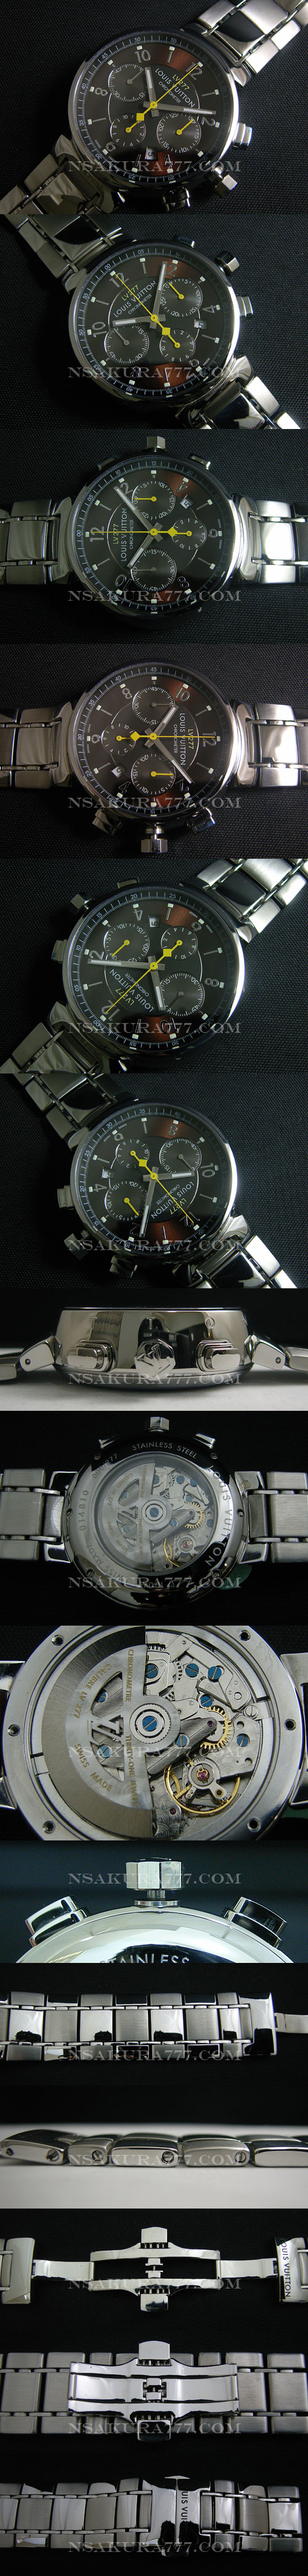 レプリカ時計ルイヴィトン新開発自動巻廉価版7750搭載 - ウインドウを閉じる